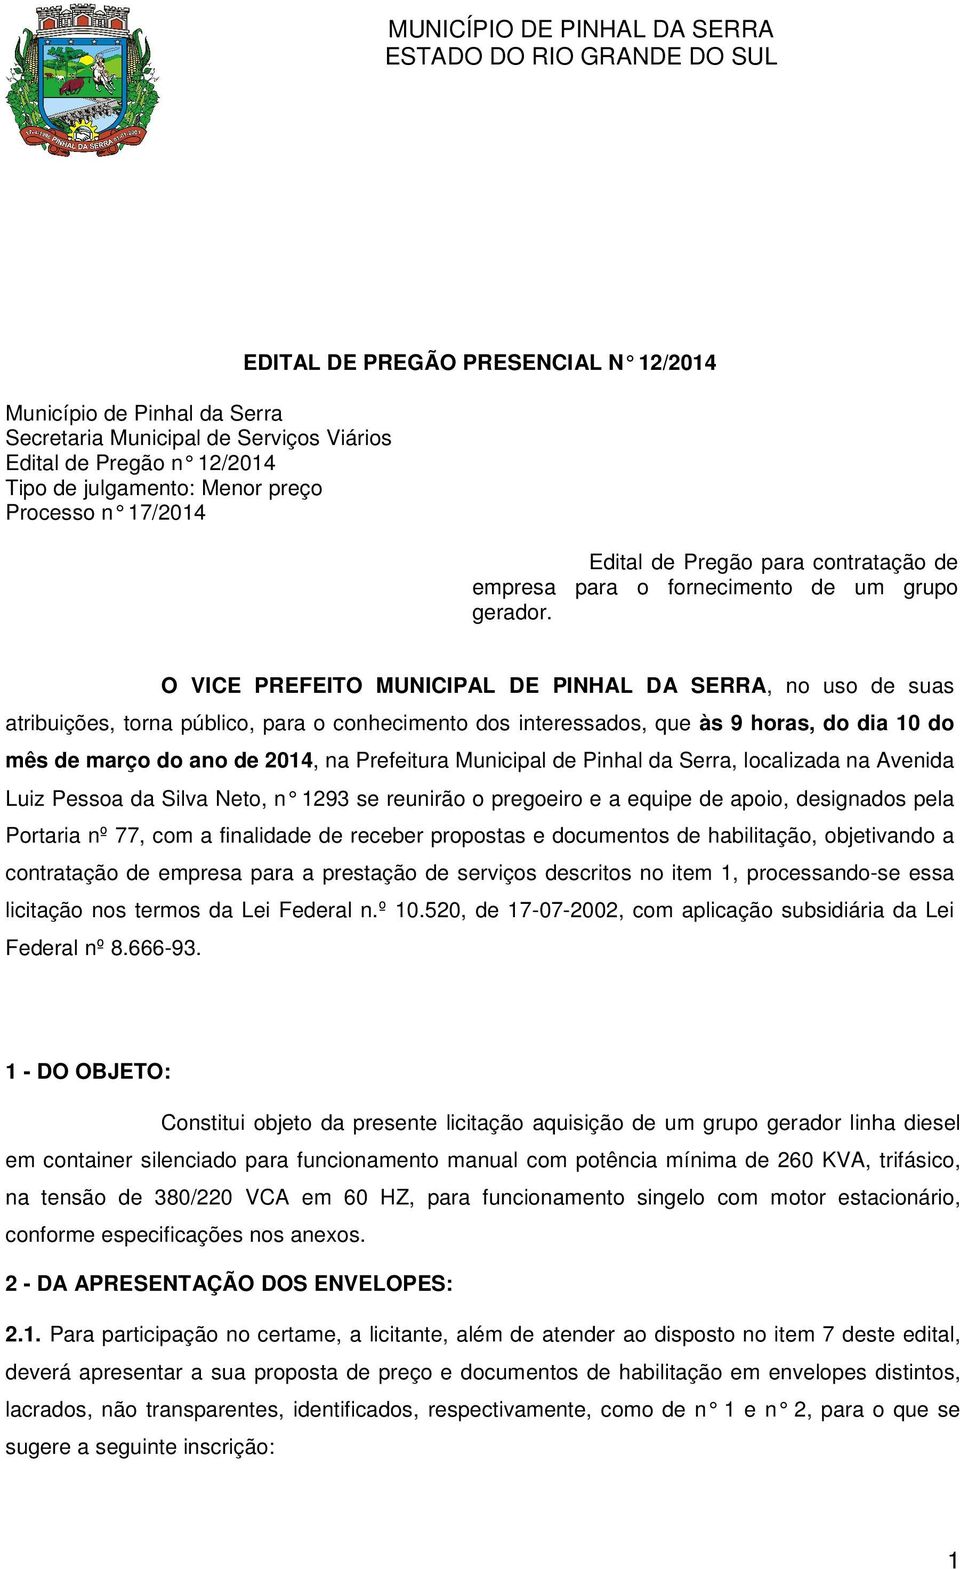 O VICE PREFEITO MUNICIPAL DE PINHAL DA SERRA, no uso de suas atribuições, torna público, para o conhecimento dos interessados, que às 9 horas, do dia 10 do mês de março do ano de 2014, na Prefeitura